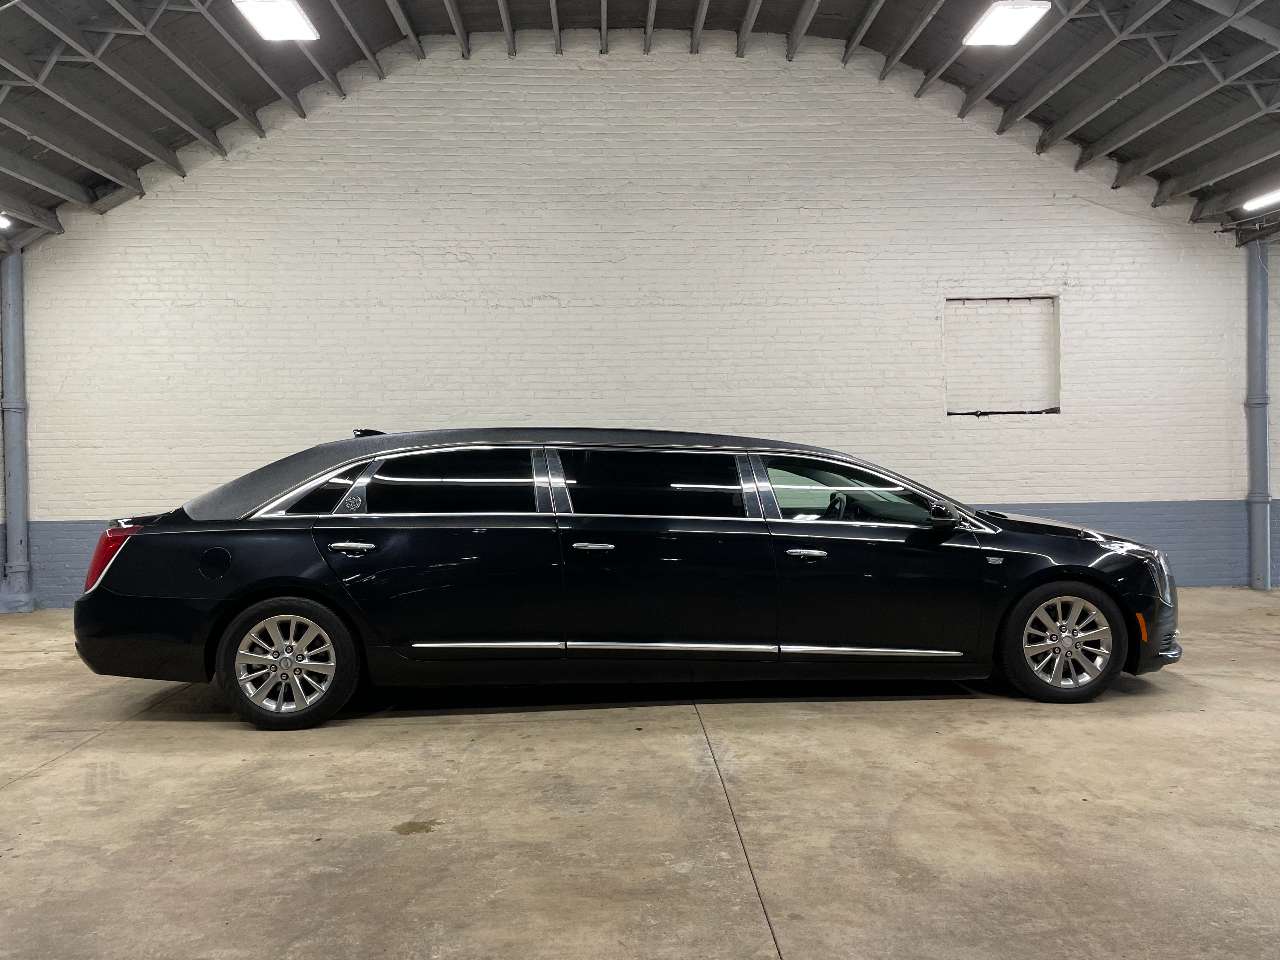 2018 Cadillac S S 52   6 Door Limousine 1661510537500